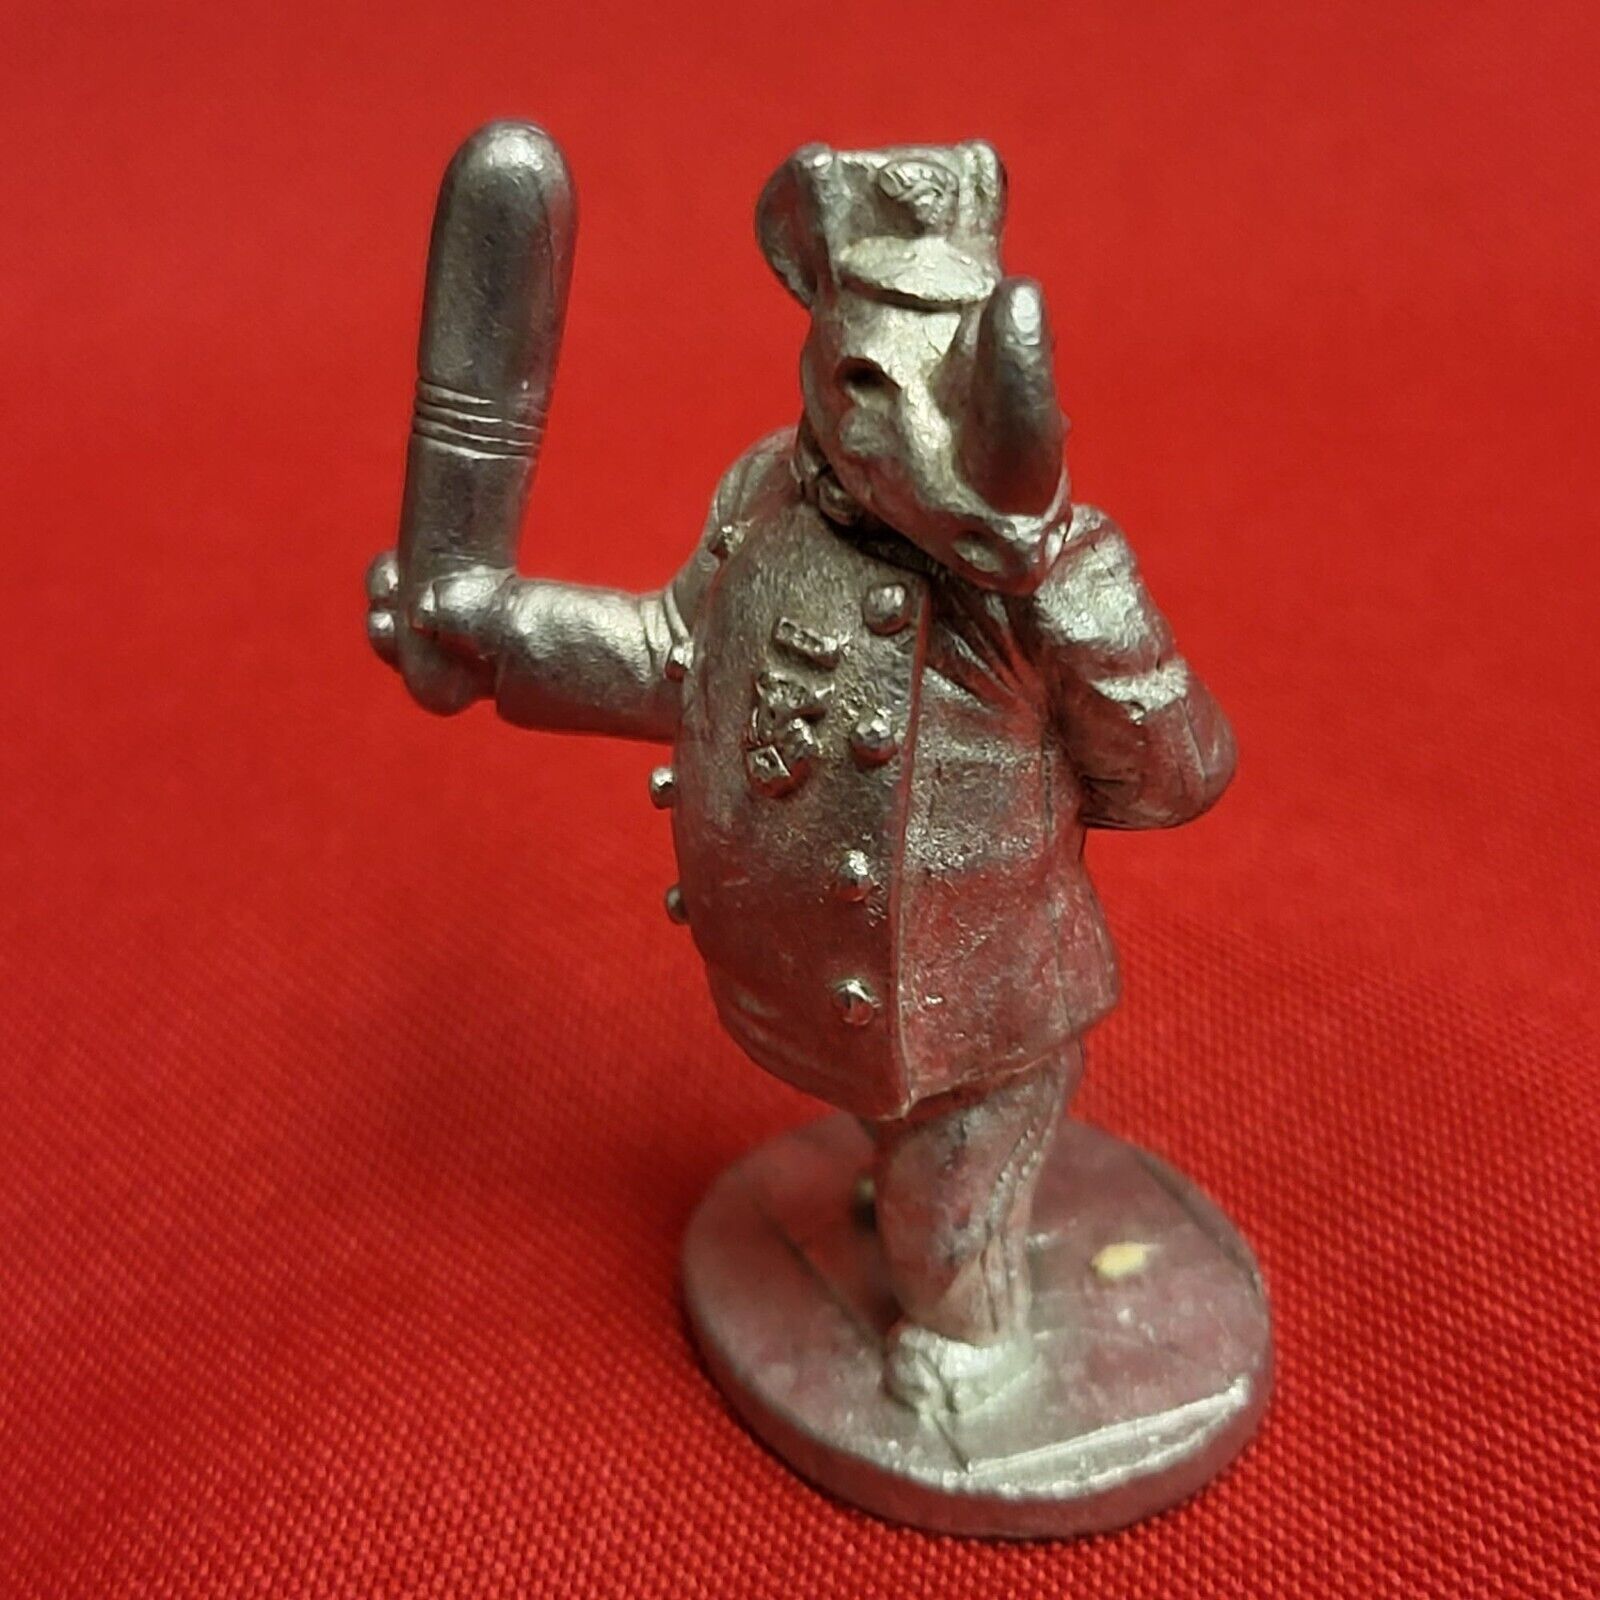 Vintage Spoontiques 1851 Pewter Miniature Police Rhinoceros Figurine